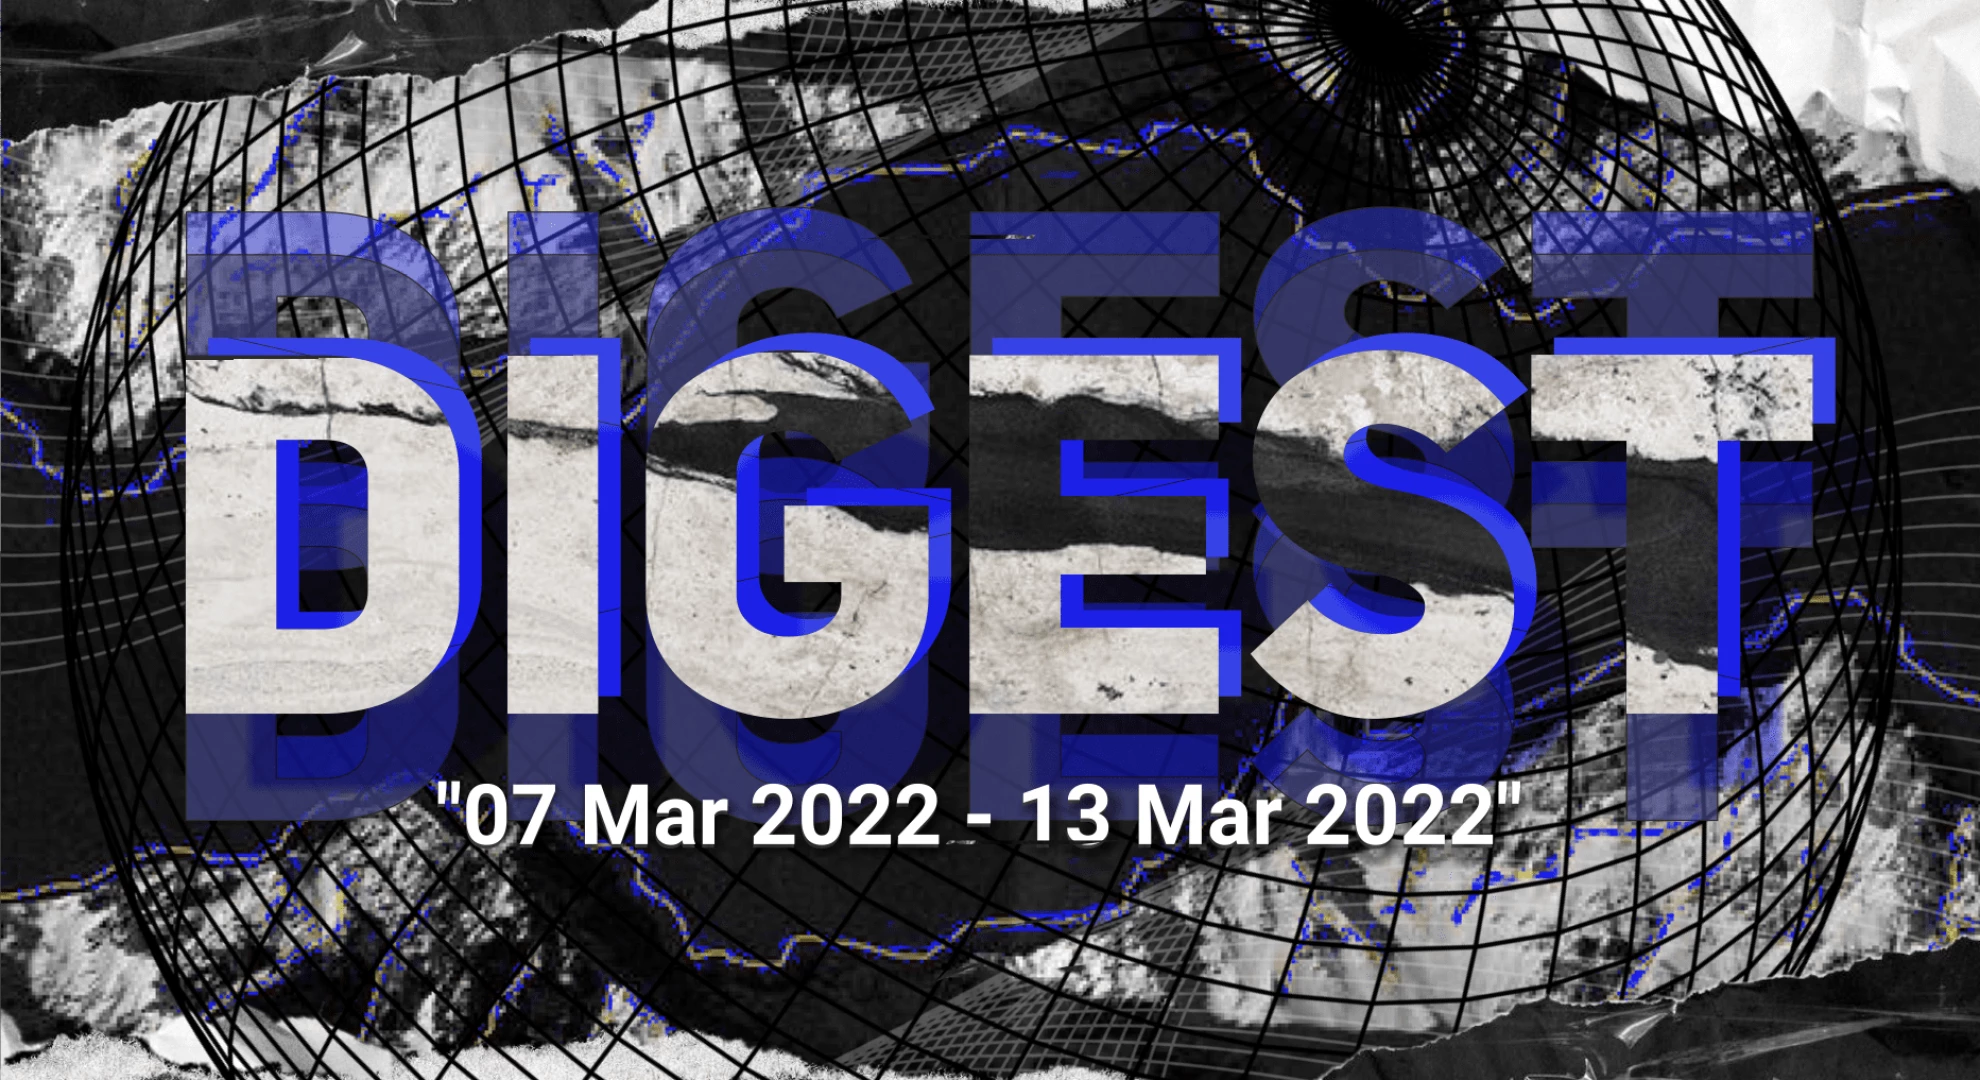 Digest 07 Mar 2022 — 13 Mar 2022